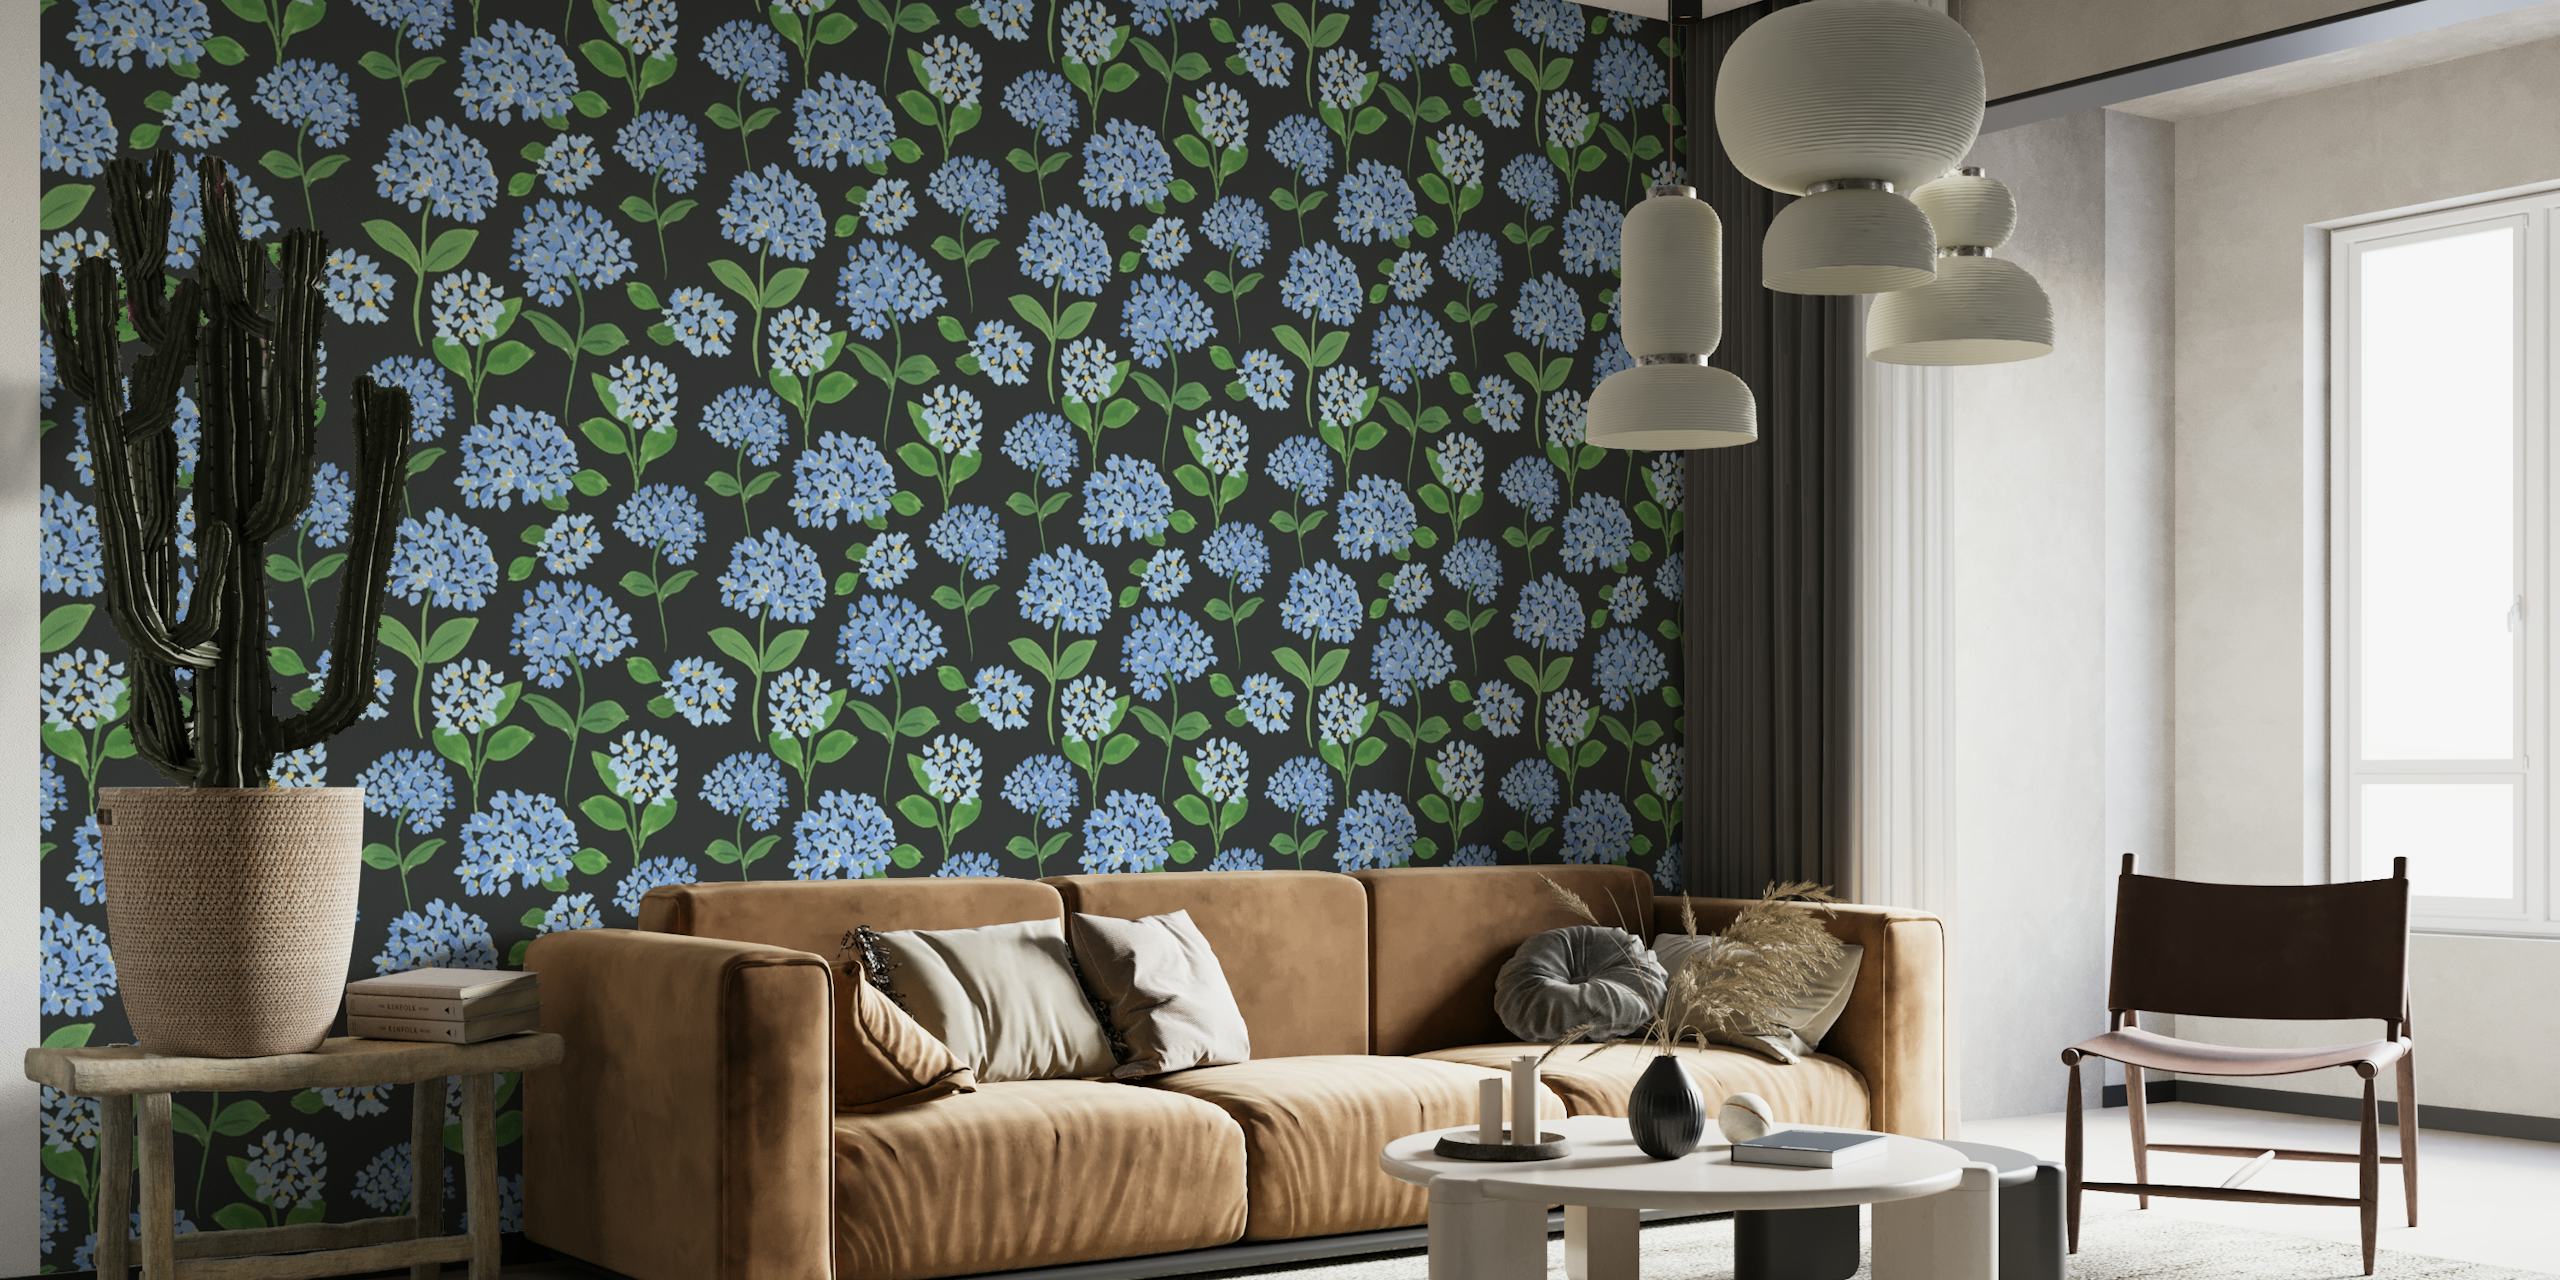 Hydrangea Pattern Wallpaper behang